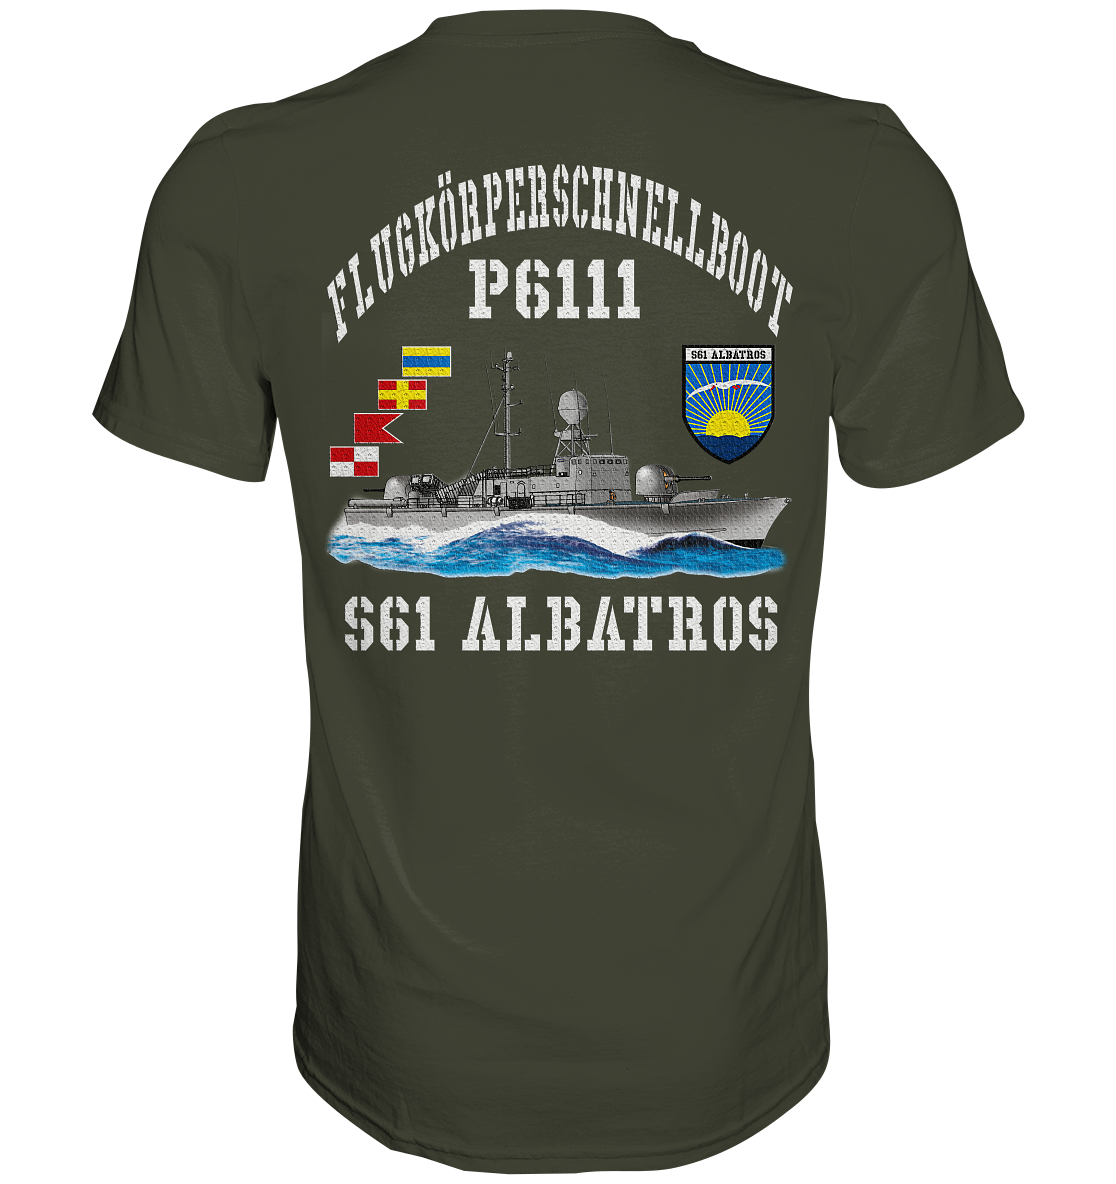 Flugkörperschnellboot P6111 ALBATROS  - Premium Shirt